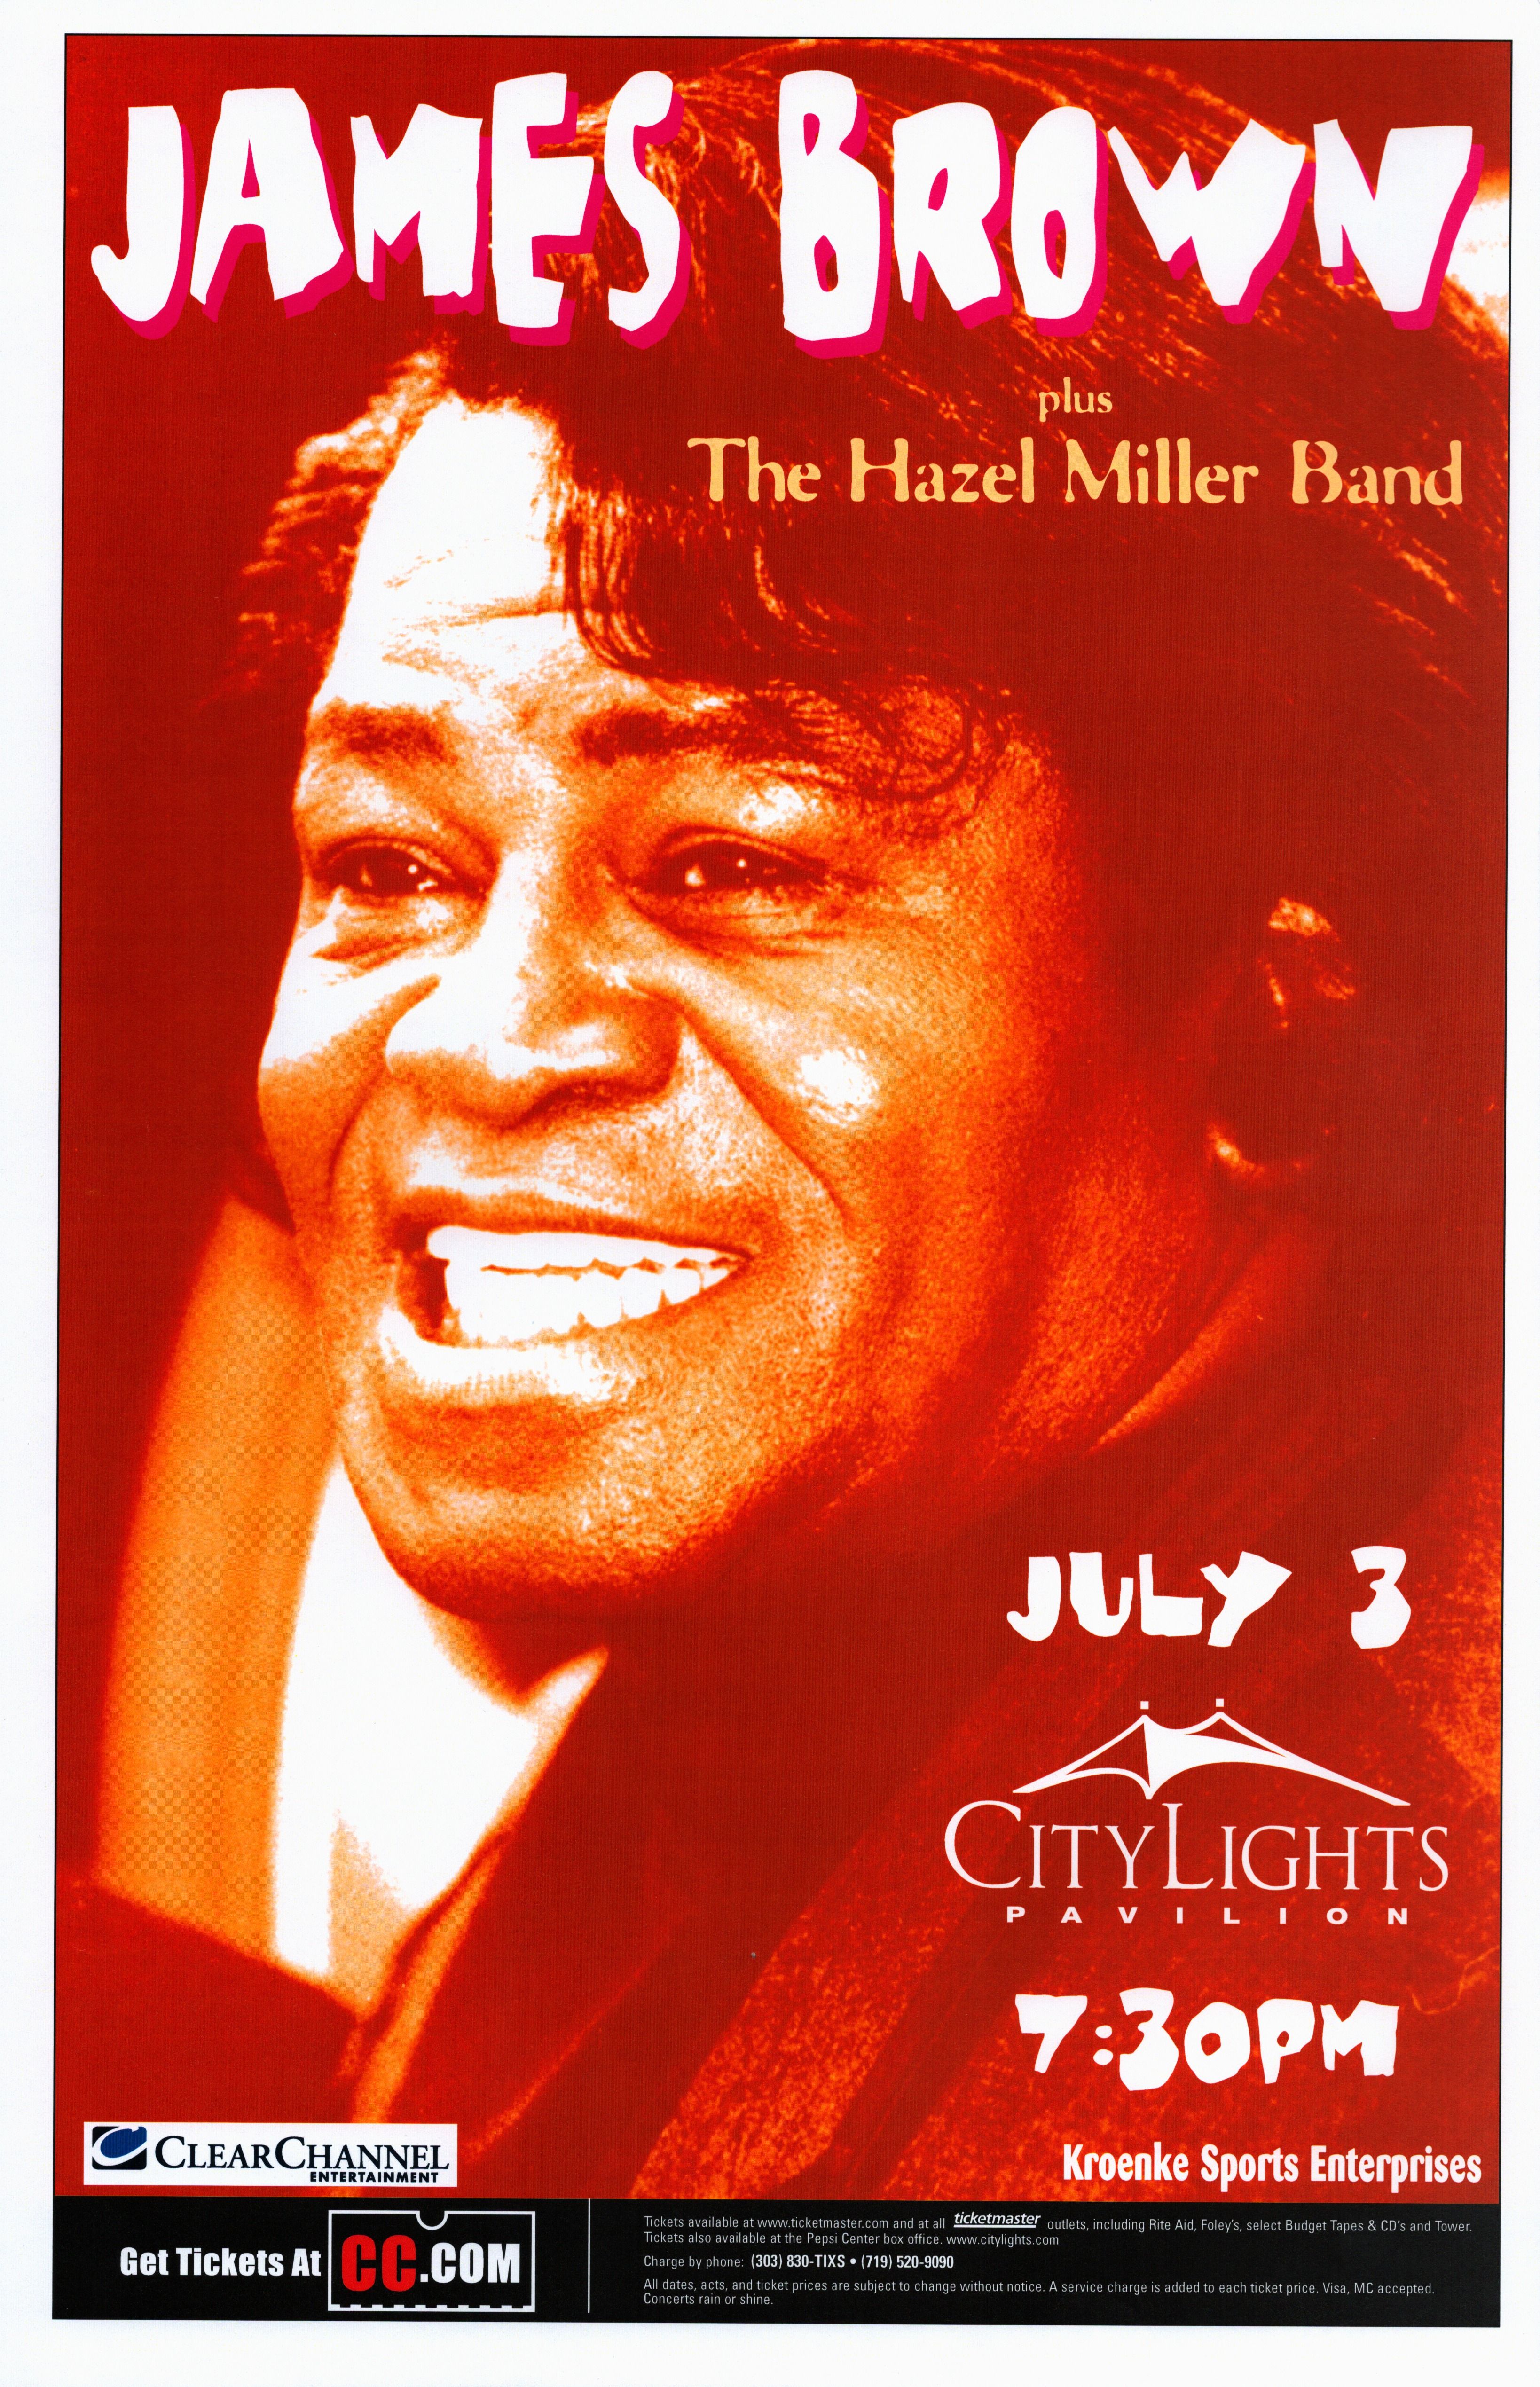 James Brown Plus The Hazel Miller Band 1000 City Lights Pavilion Jul 3 Concert Poster